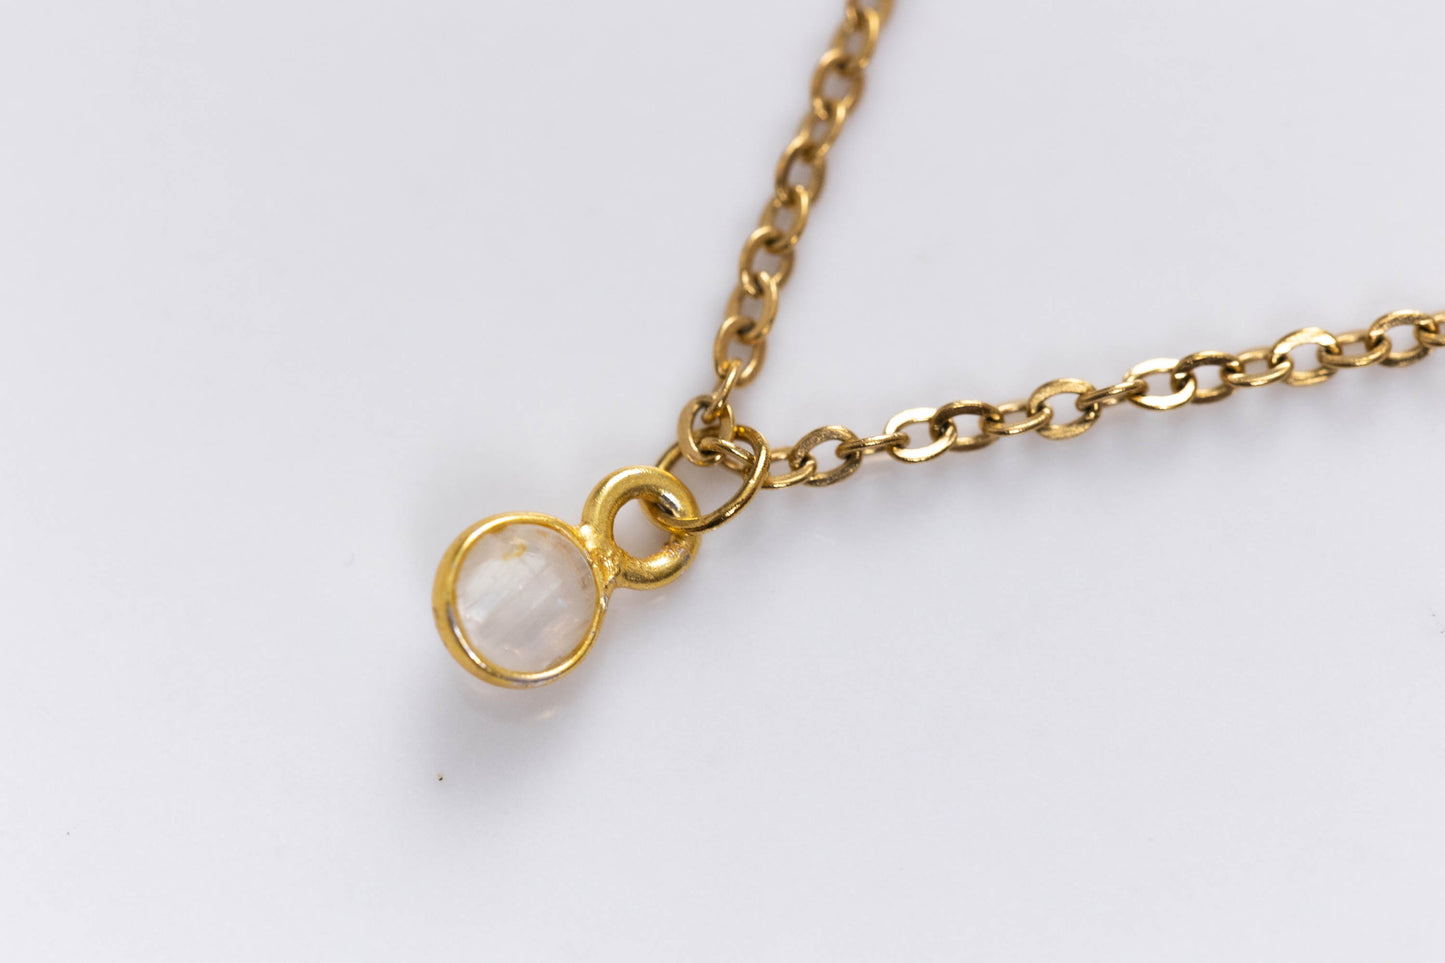 Small precious stones necklaces